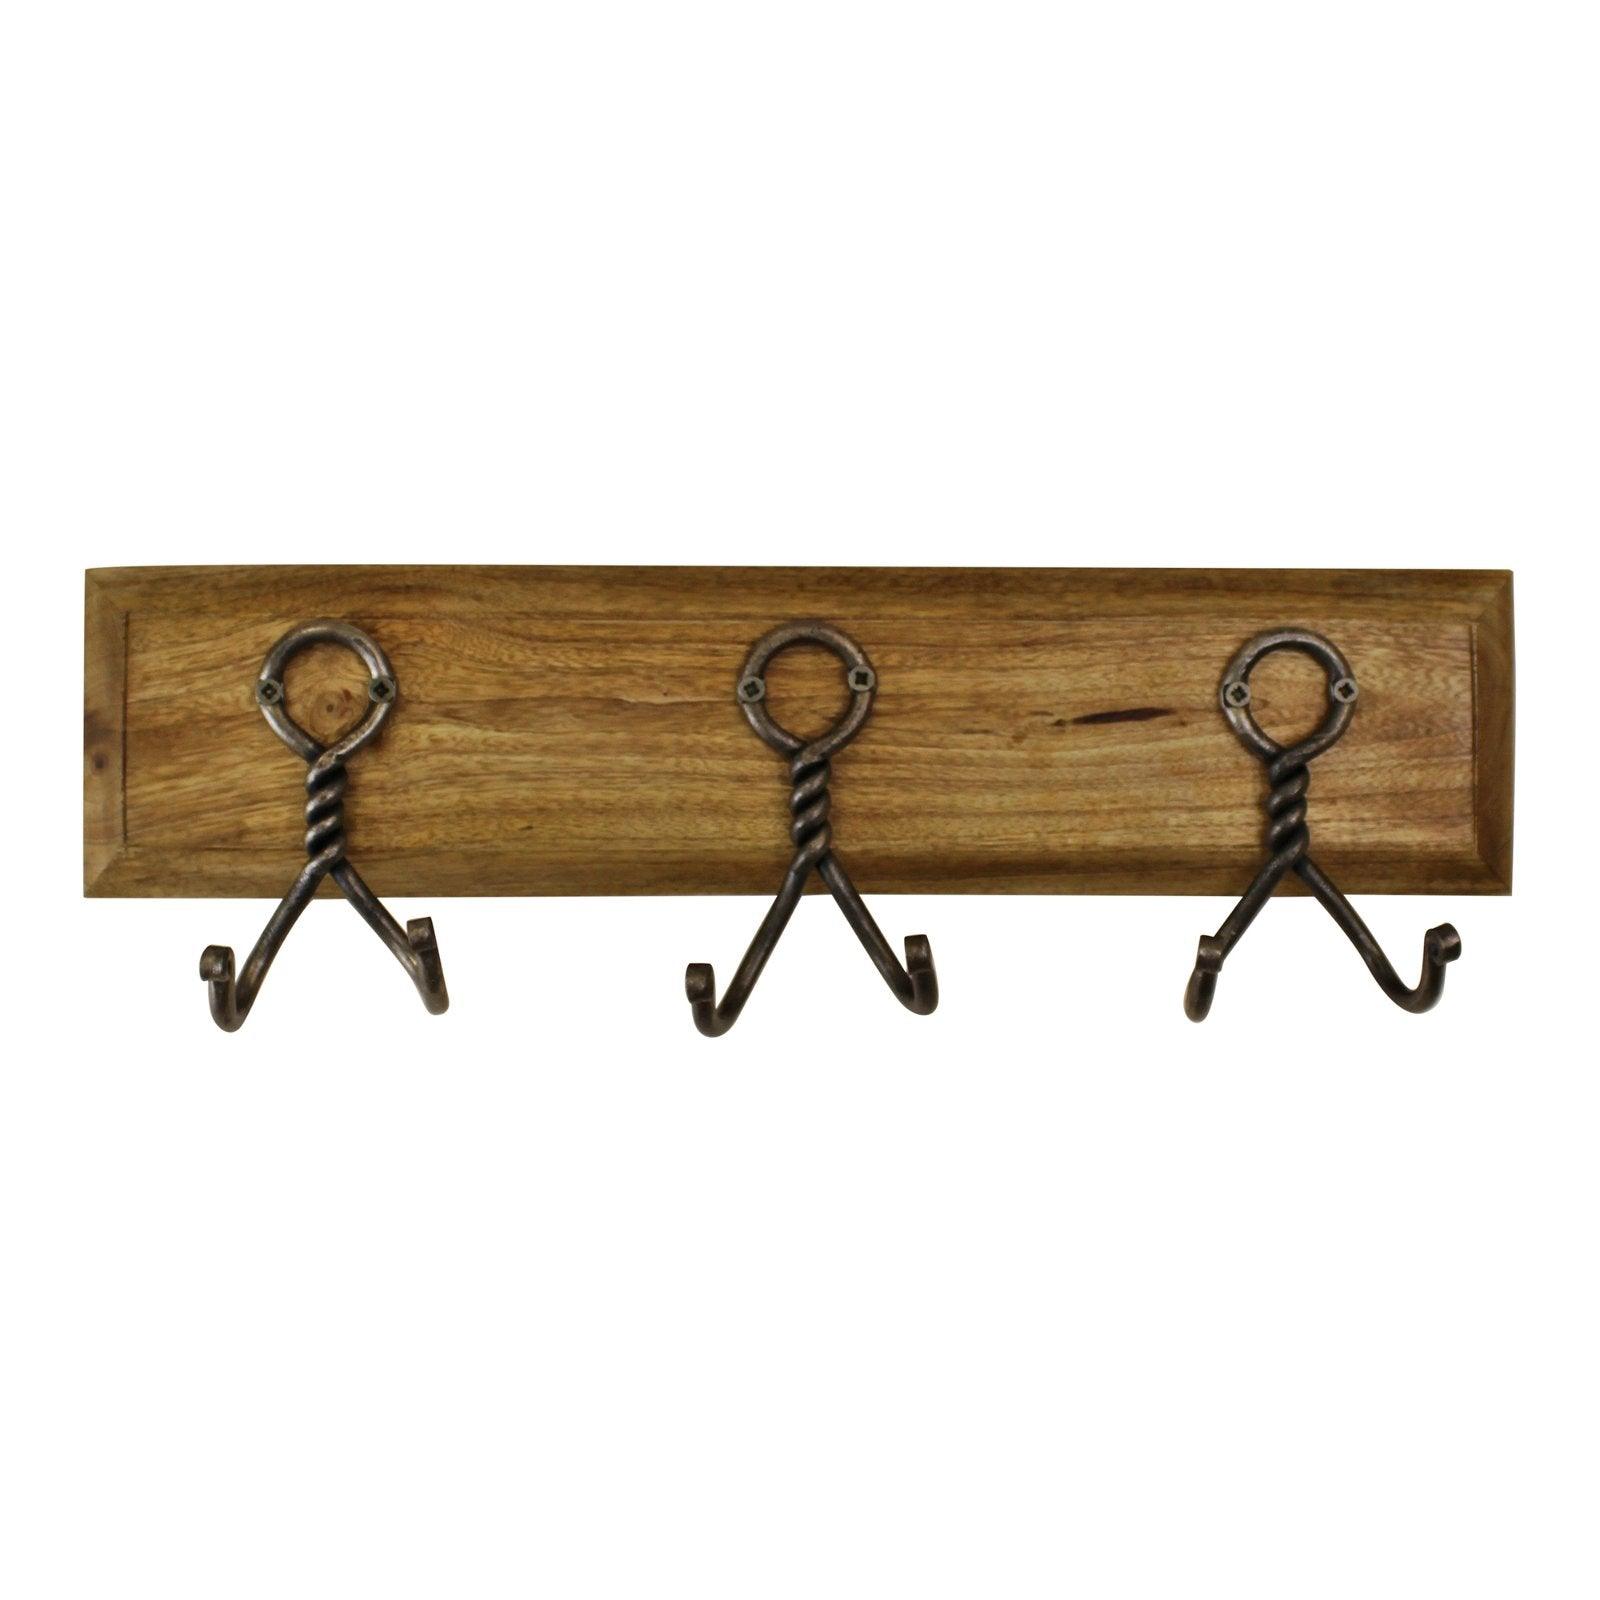 3 Piece Double Metal Hooks On Wooden Base-Coat Hooks